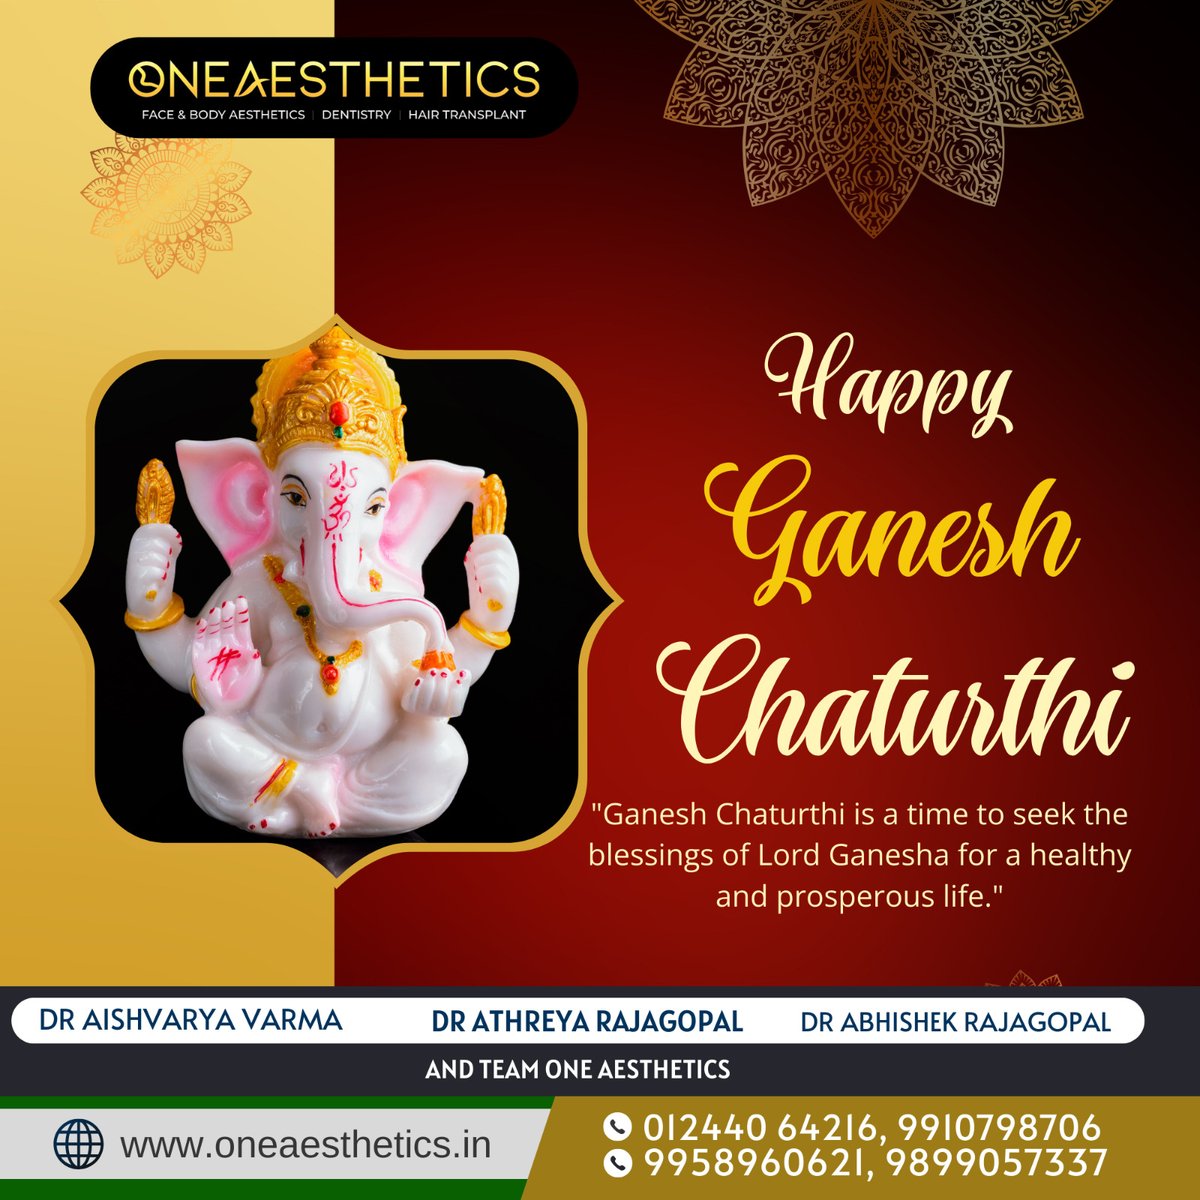 Happy Ganesh Chaturthi 📷📷'
'Ganpati Bappa Morya! Seek his blessings. 📷 📷 '
#GaneshChaturthi 📷 #GanpatiBappaMorya 📷 #FestivalOfGanesh 📷 #LordGanesha 📷 #Ganeshotsav2023 📷 #DivineCelebrations 📷 #GaneshUtsav 📷 #GaneshChaturthiVibes 📷 #ModakLove 📷 #BlessingsFromGanesha 📷